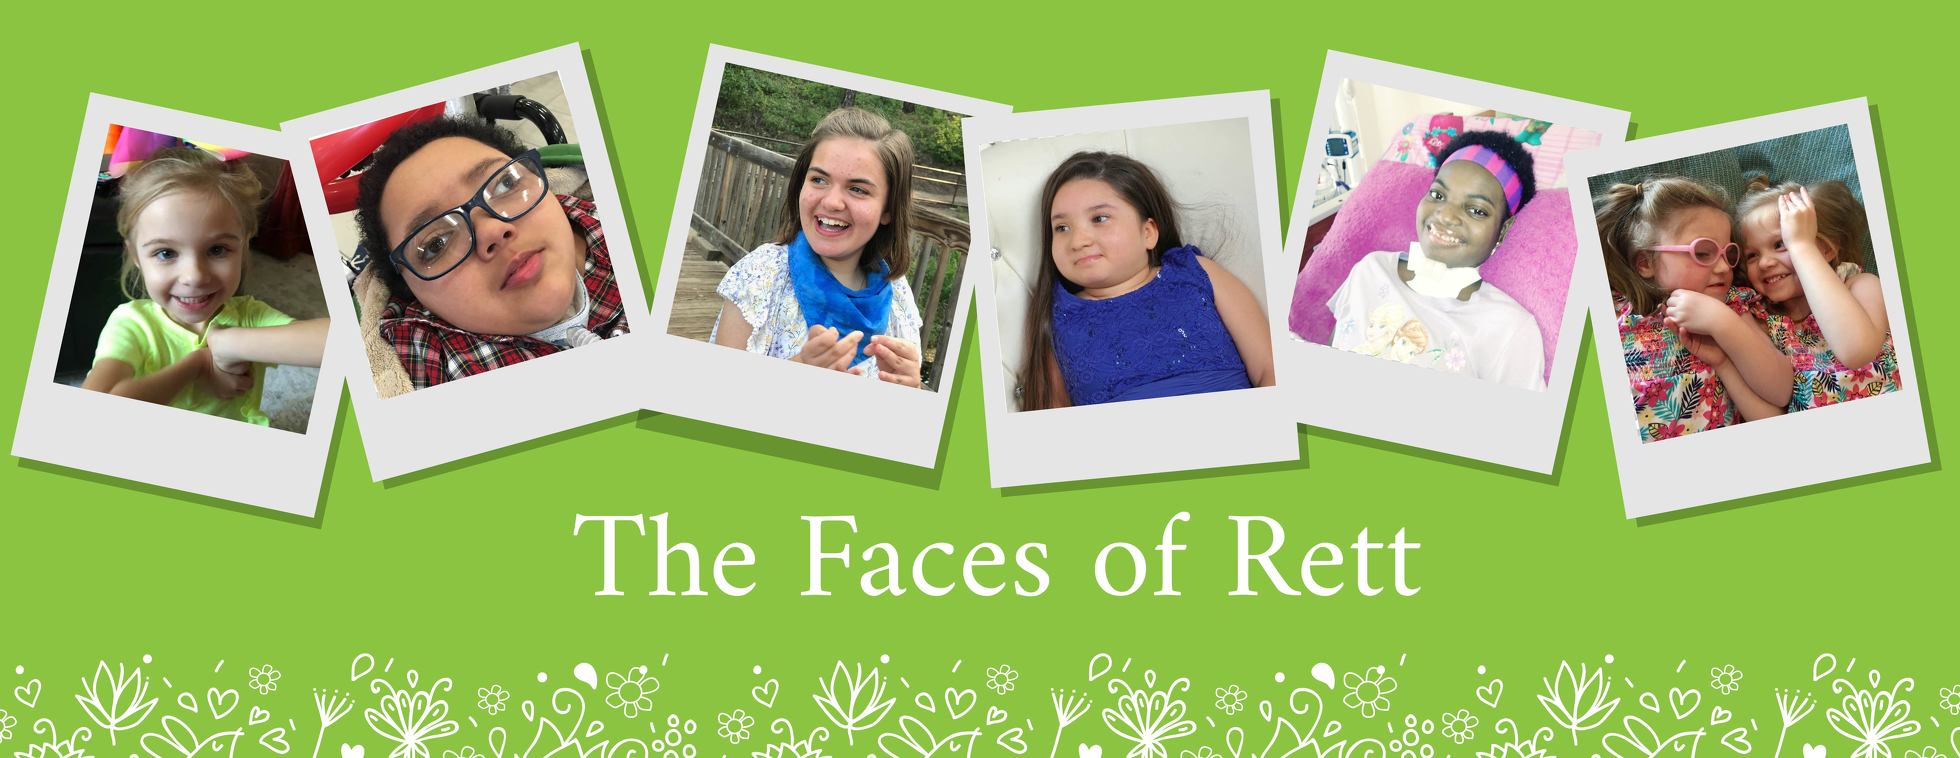 The Faces of Rett